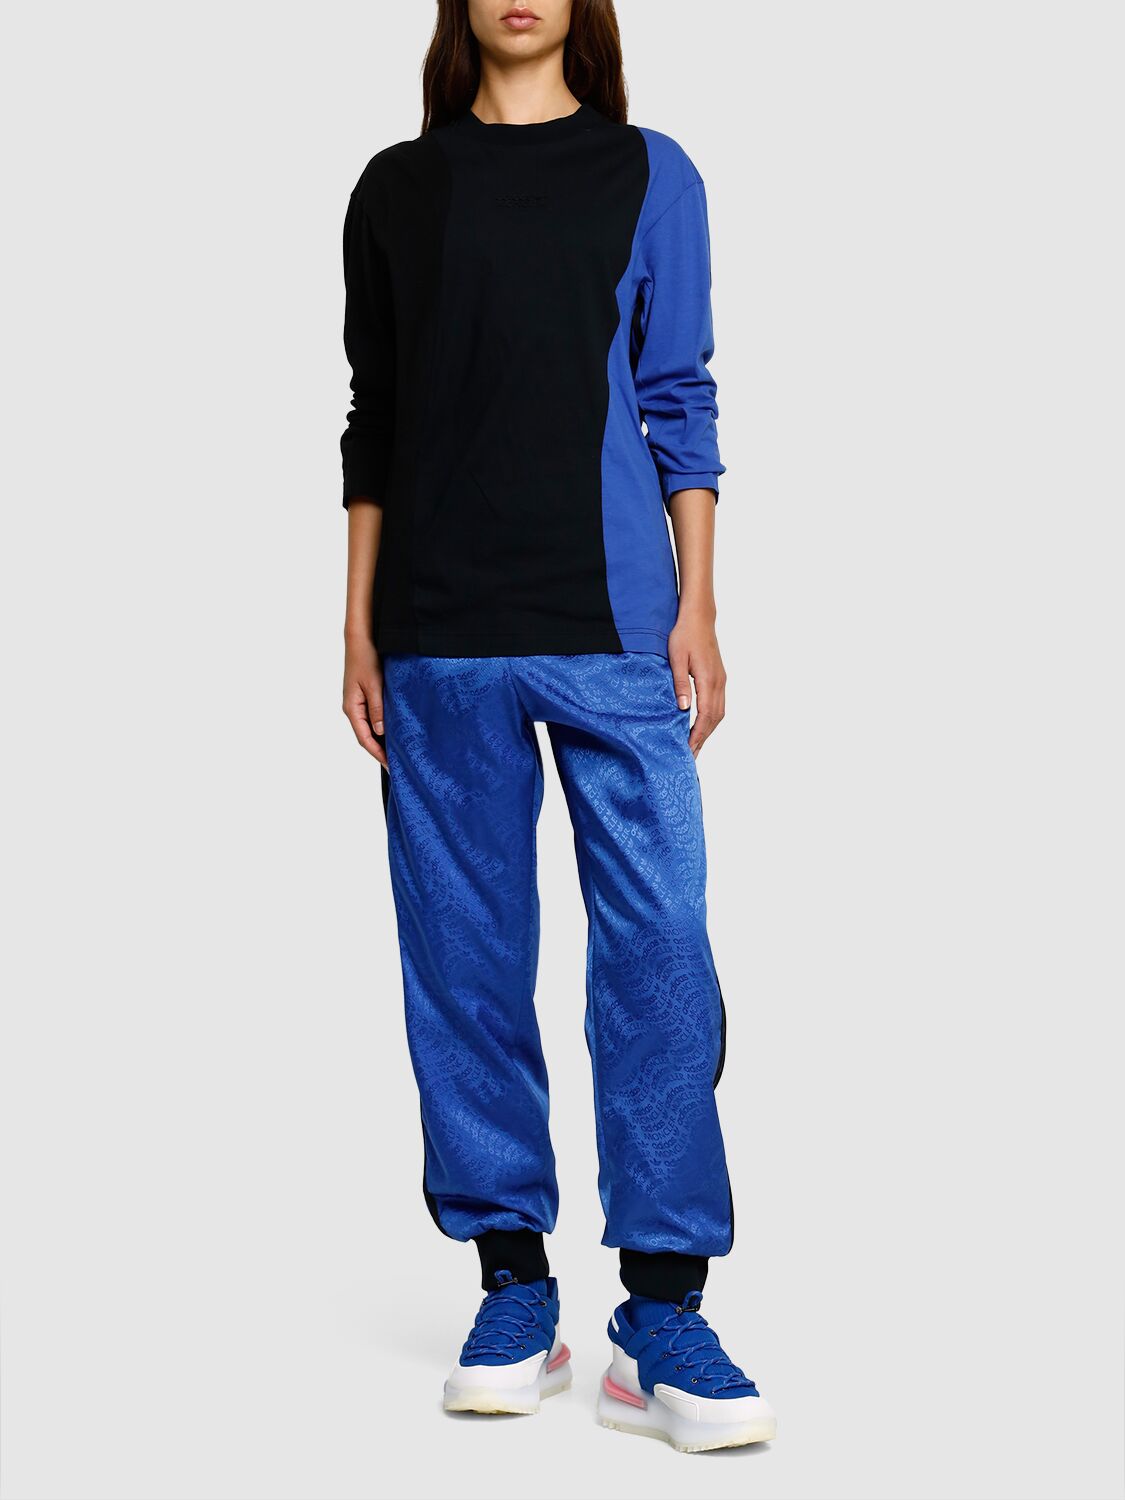 Shop Moncler Genius Moncler X Adidas Cotton T-shirt In Black,blue